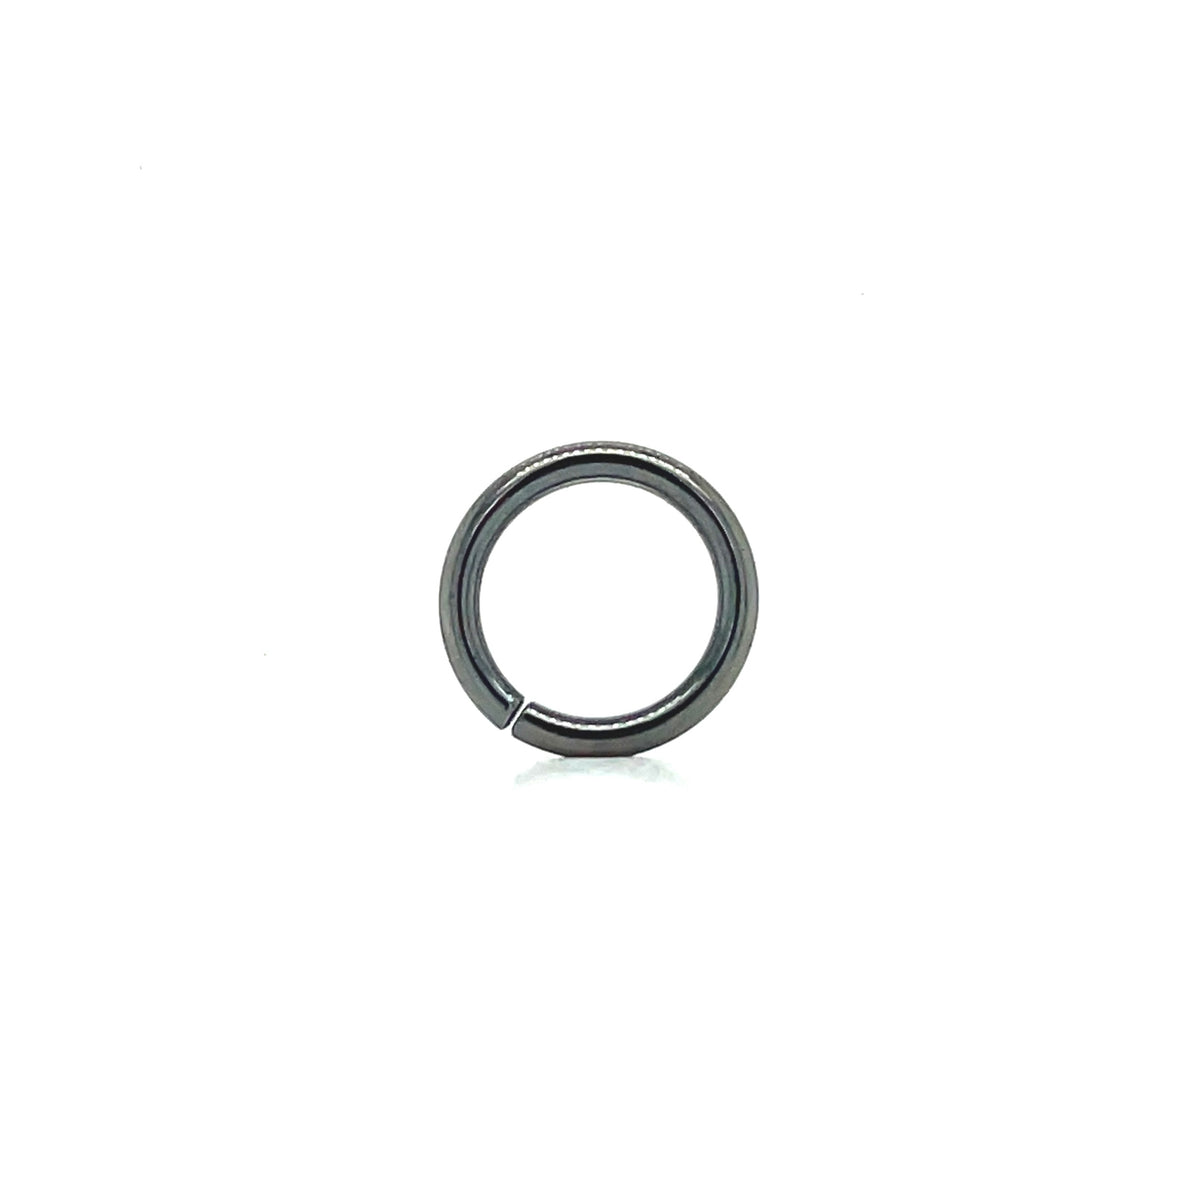 Apex Niobium Seam Ring